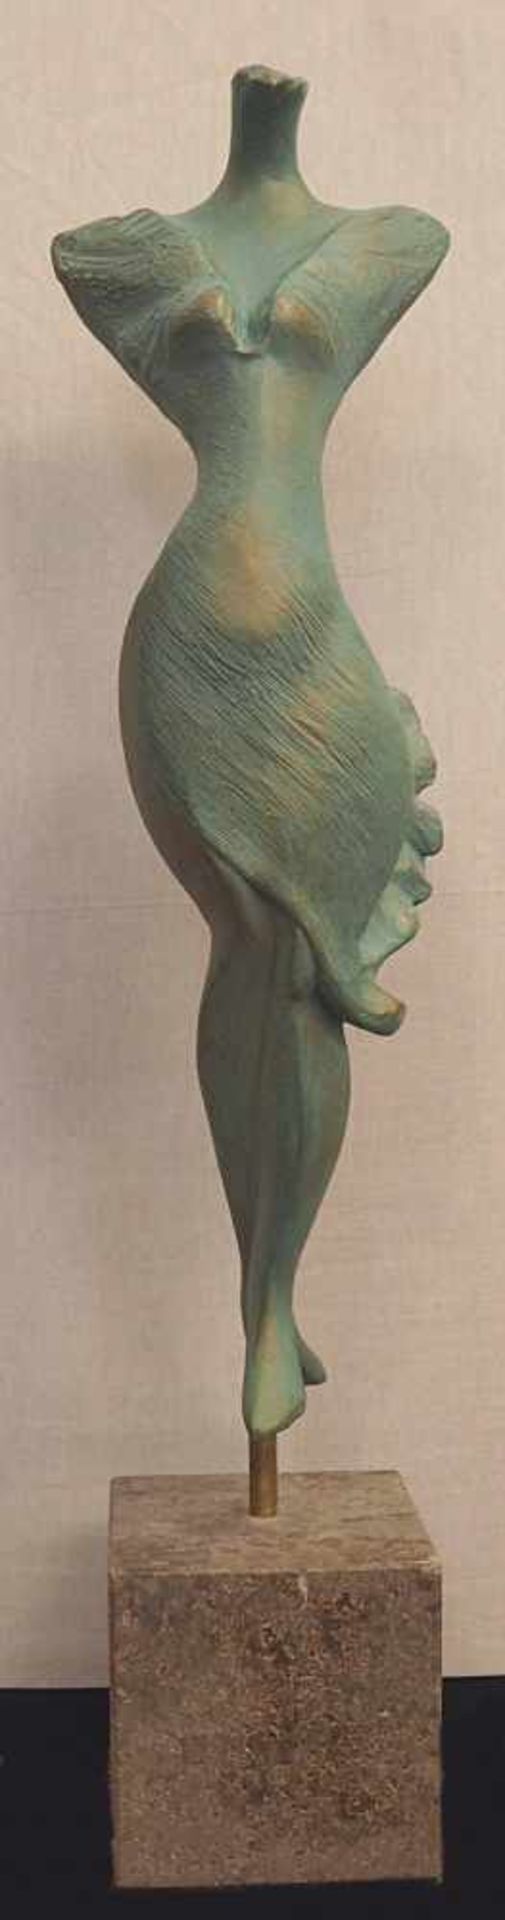 1 Figur, wohl Metall u.a. Kopie/Replik nach Rodin "Der Kuss"Höhe ca. 10cm sowie eine